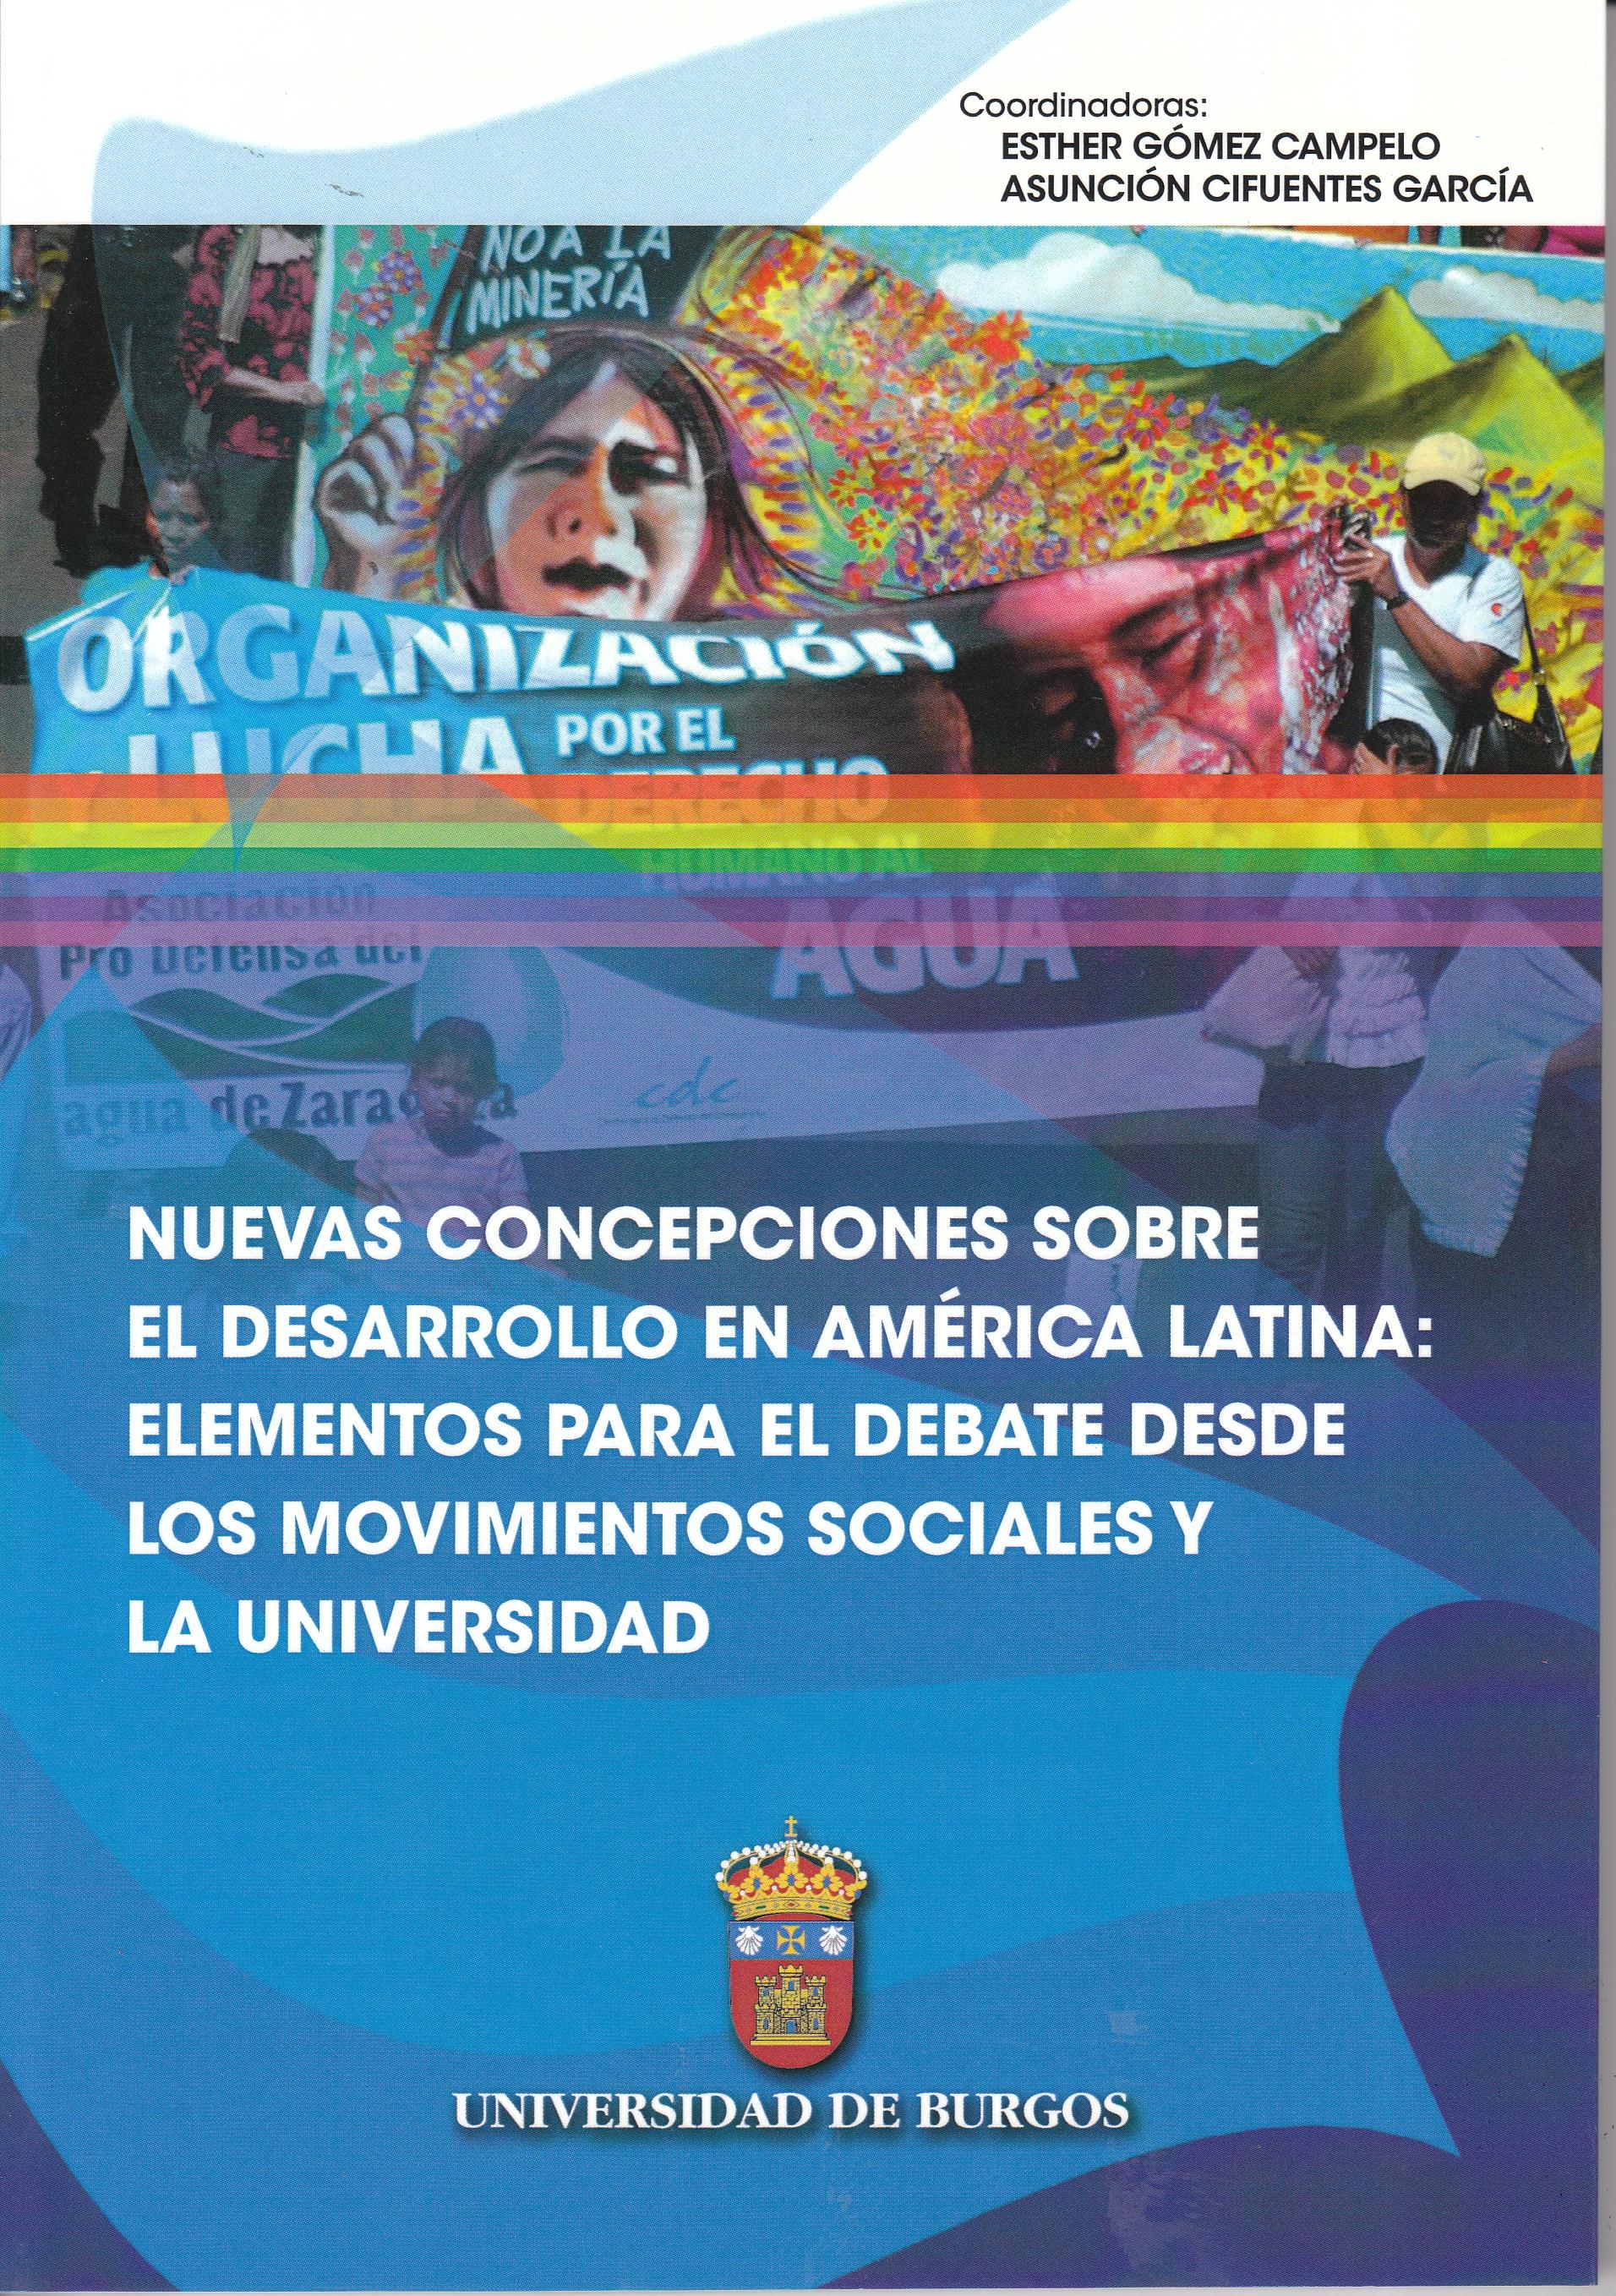 Nuevas concepciones sobre el desarrollo en América Latina "Elementos para el debate desde los movimientos sociales y la Universidad "